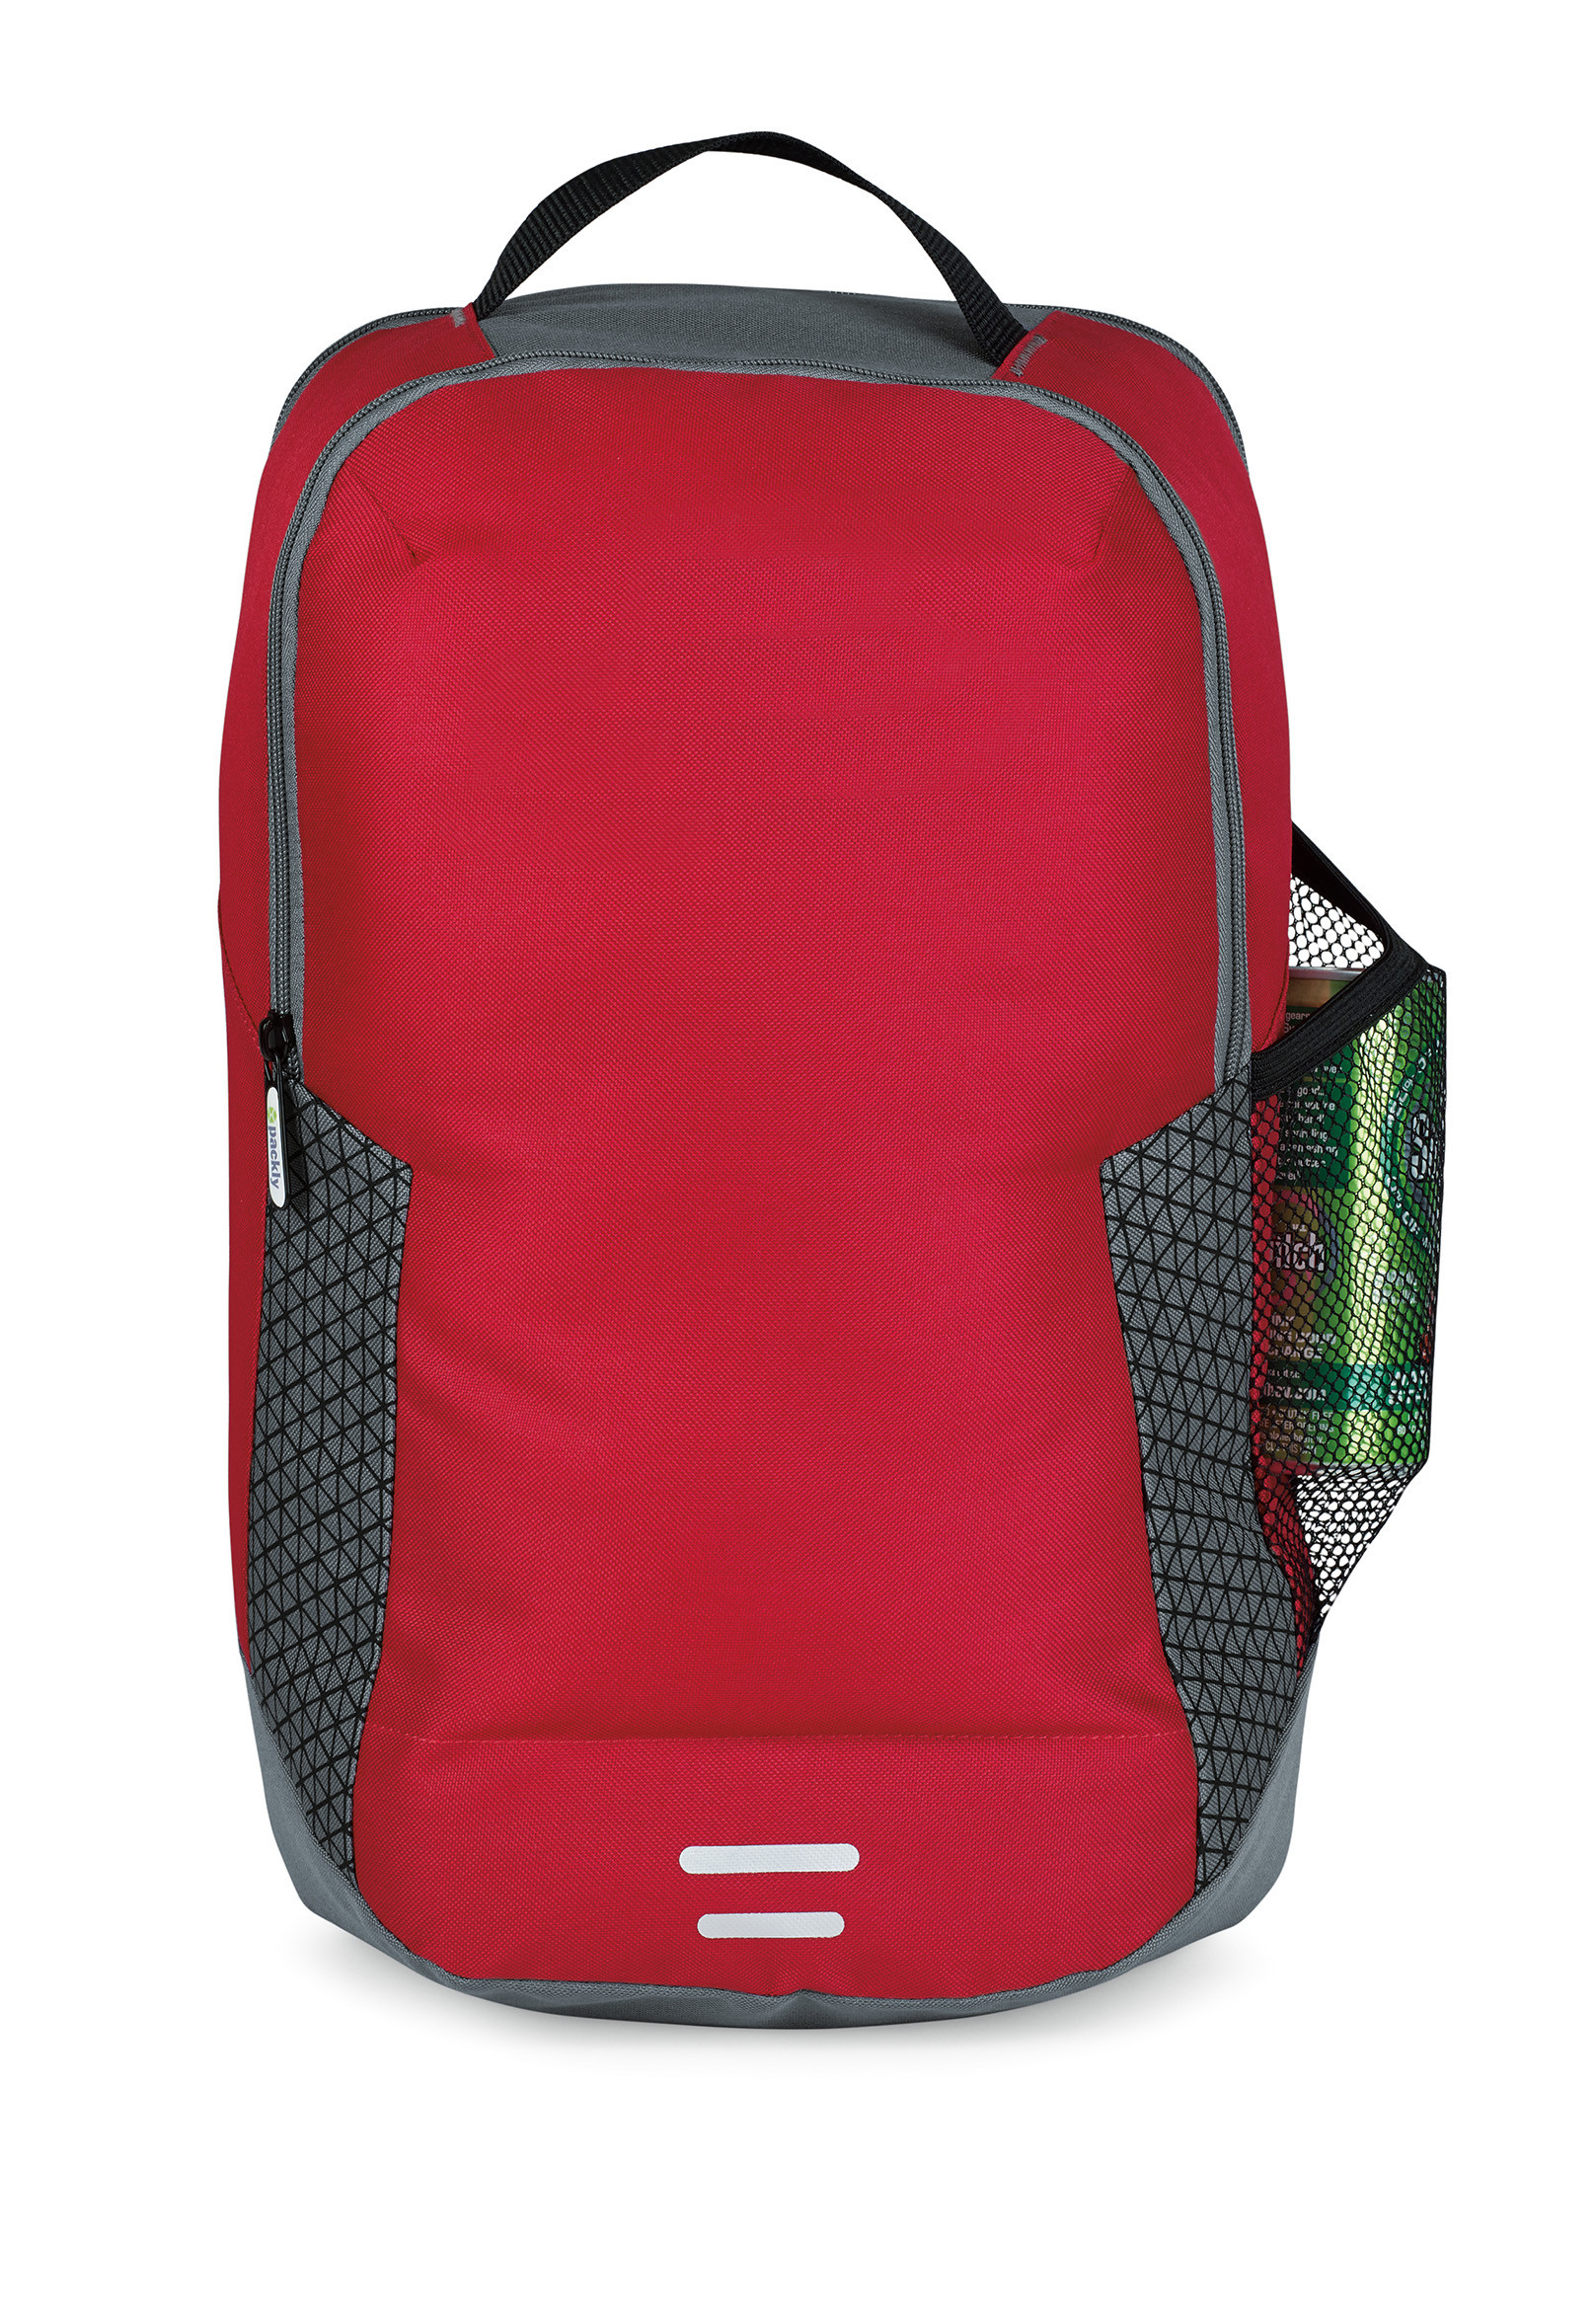 Gemline 5326 - Freedom Backpack